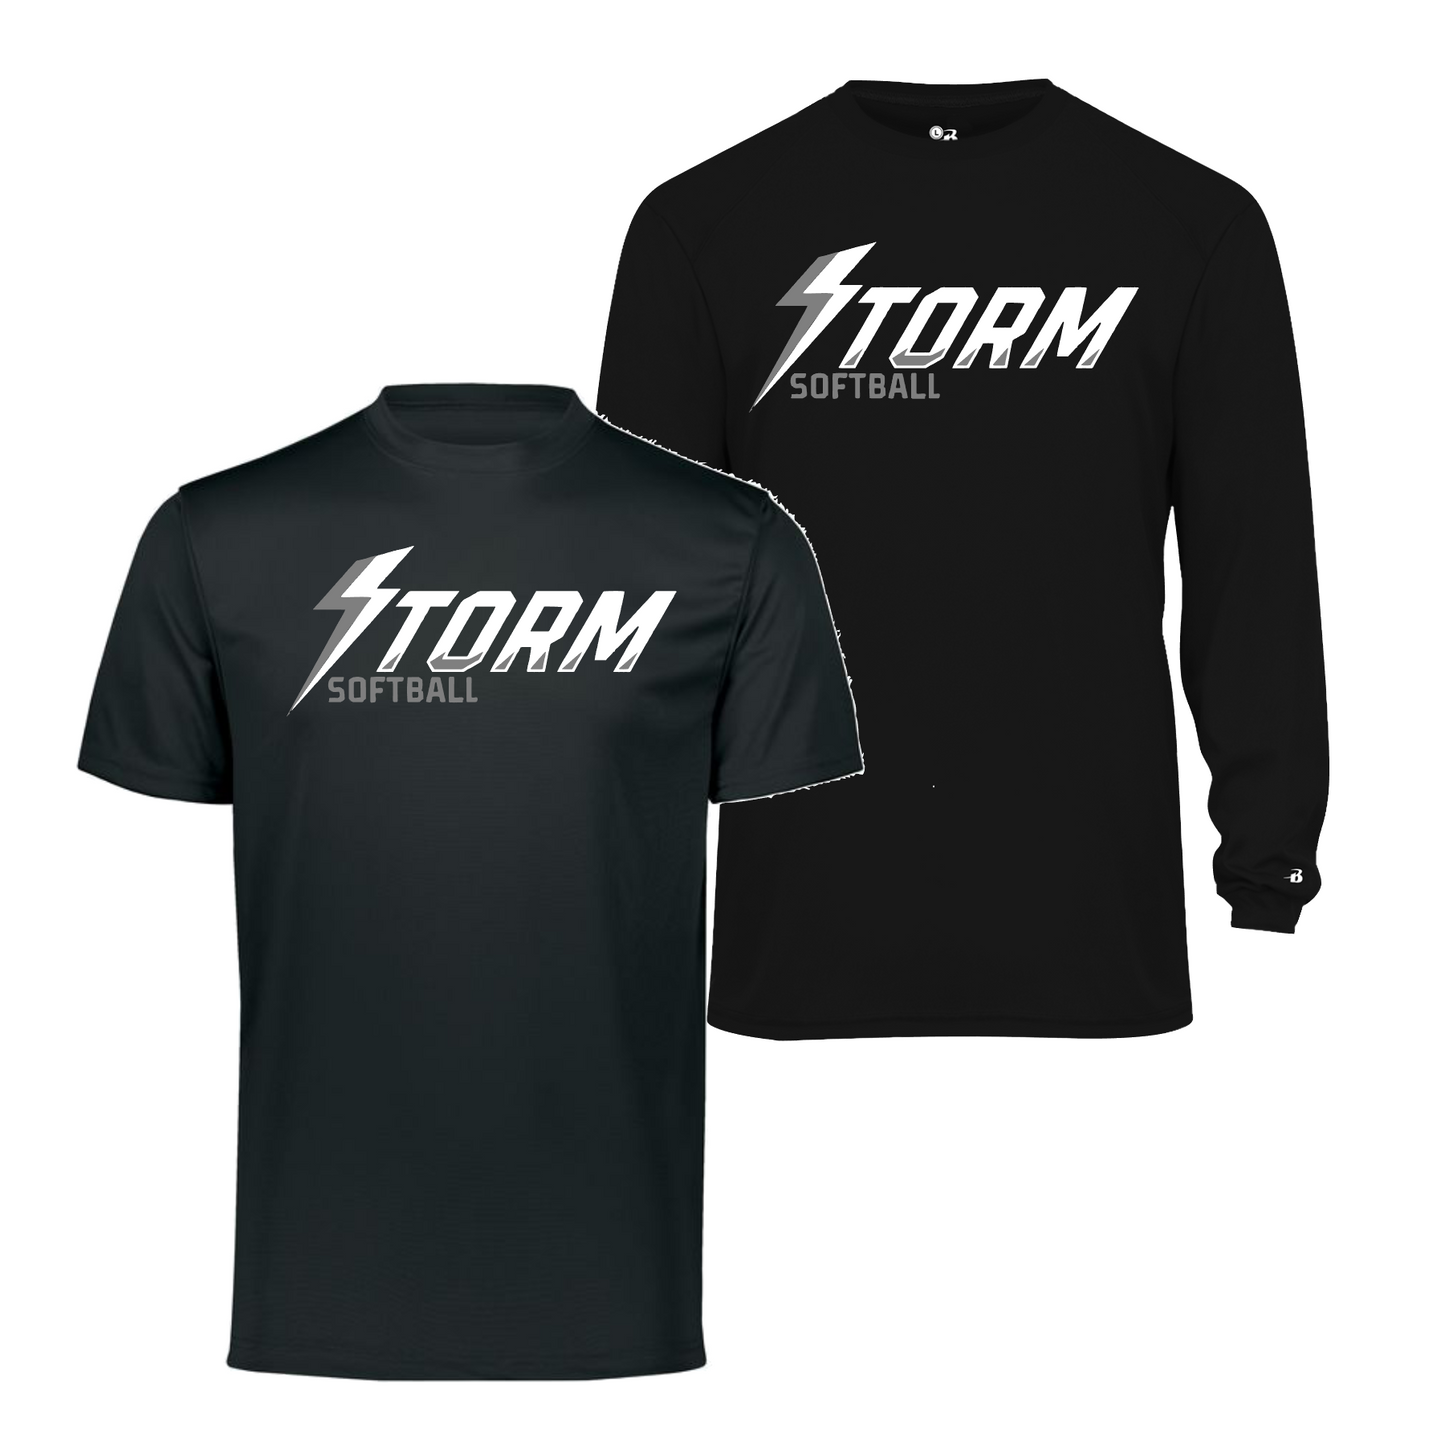 Storm Softball Tee, Black Storm Softball Shirt, Storm Black Tshirt